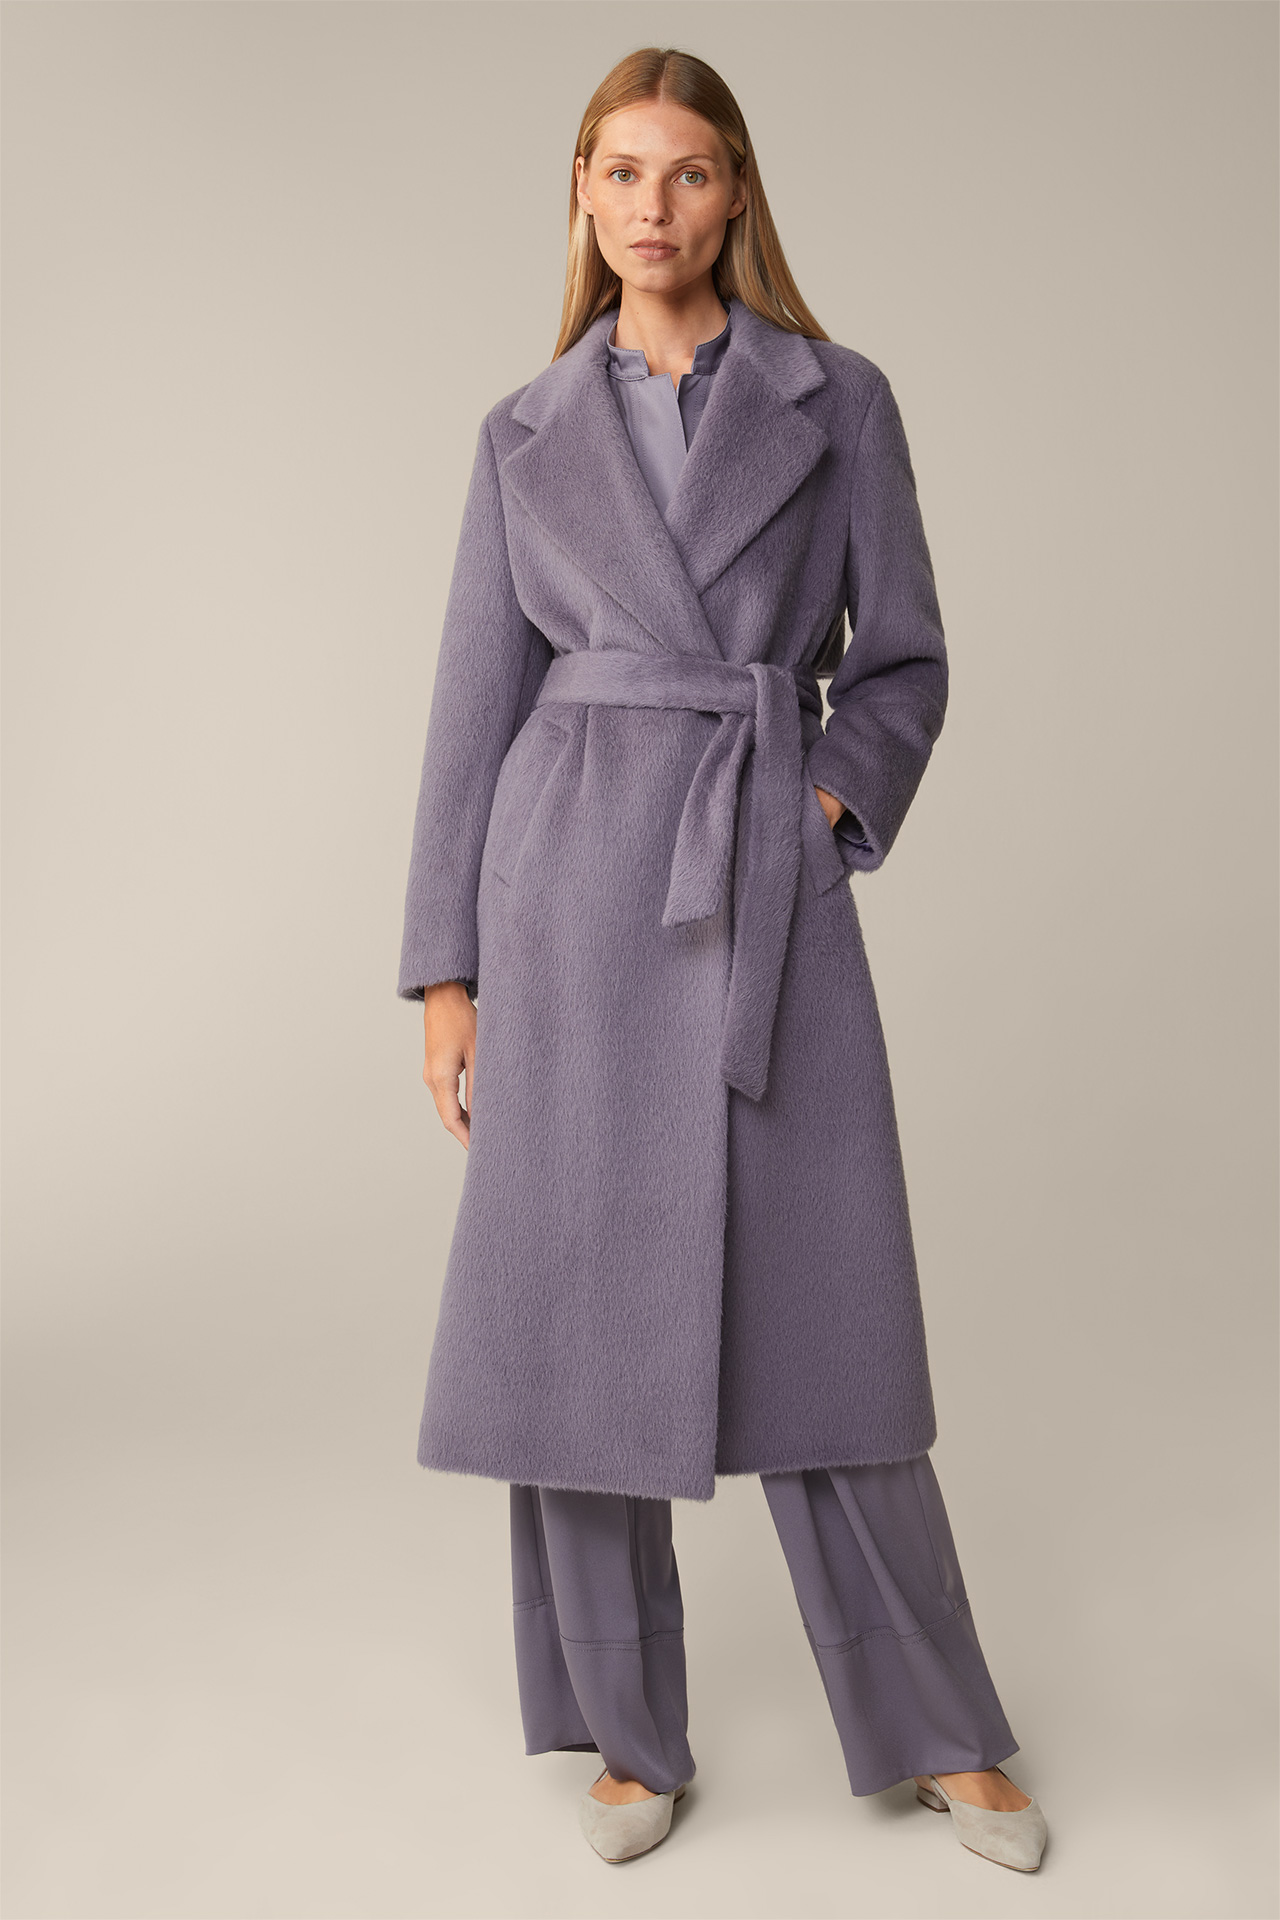 Alpaca Virgin Wool Roben Coat in Mauve/Purple